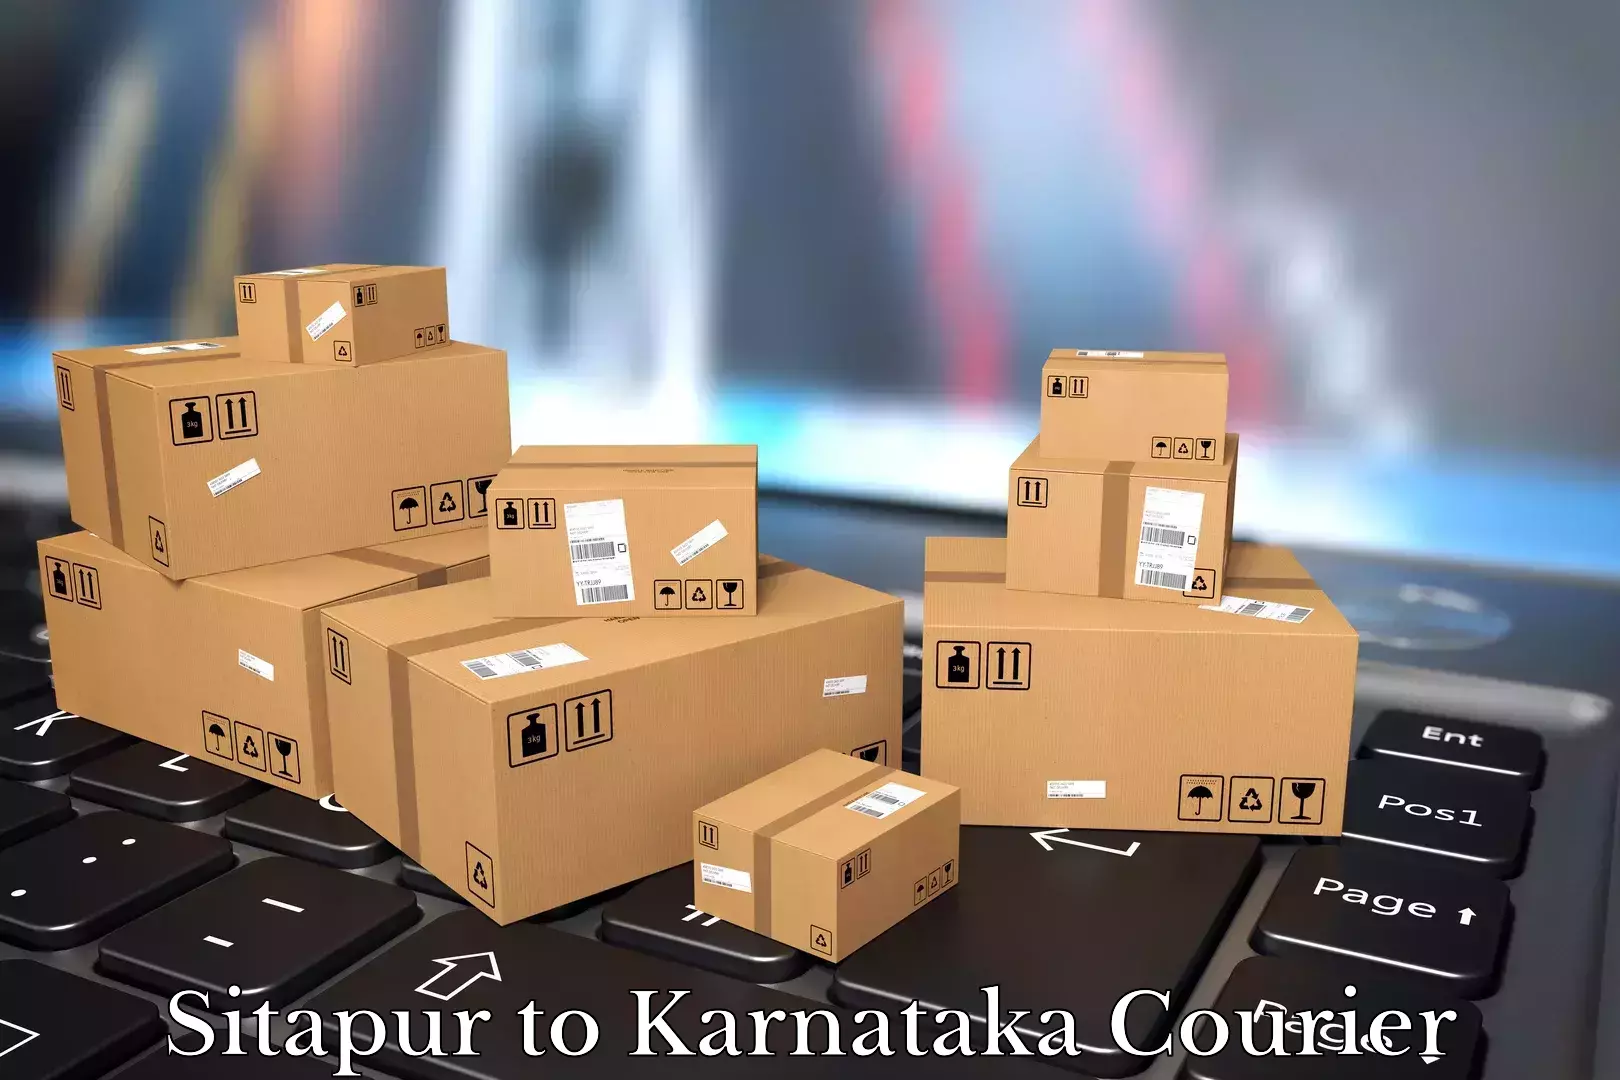 Furniture transport experts Sitapur to Karnataka